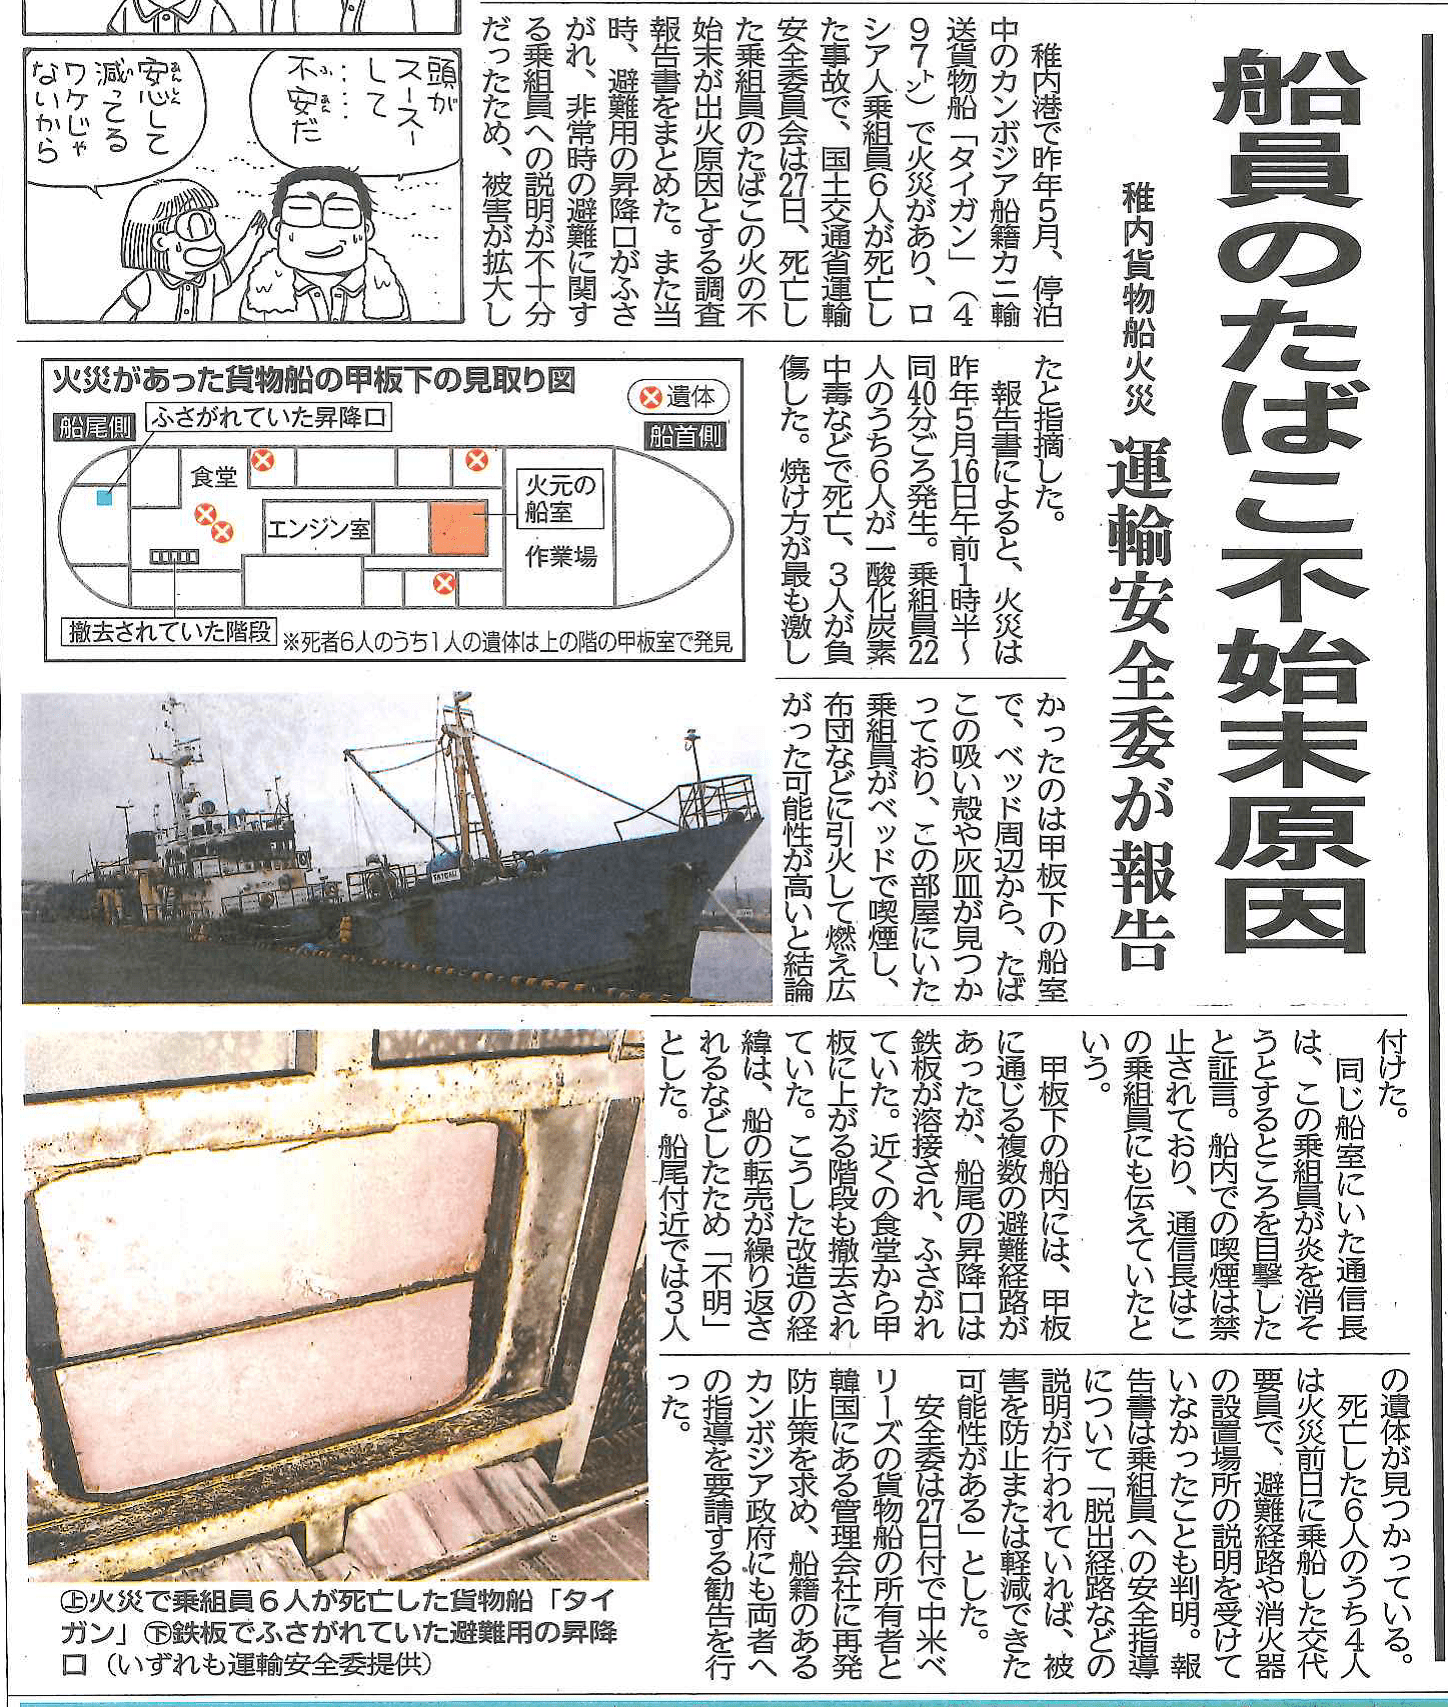 稚内で火災の密漁カンボジアｆｏｃ船 Tajgan タイガン 原因は船員のタバコ ロシア漁業ニュースヘッドライン